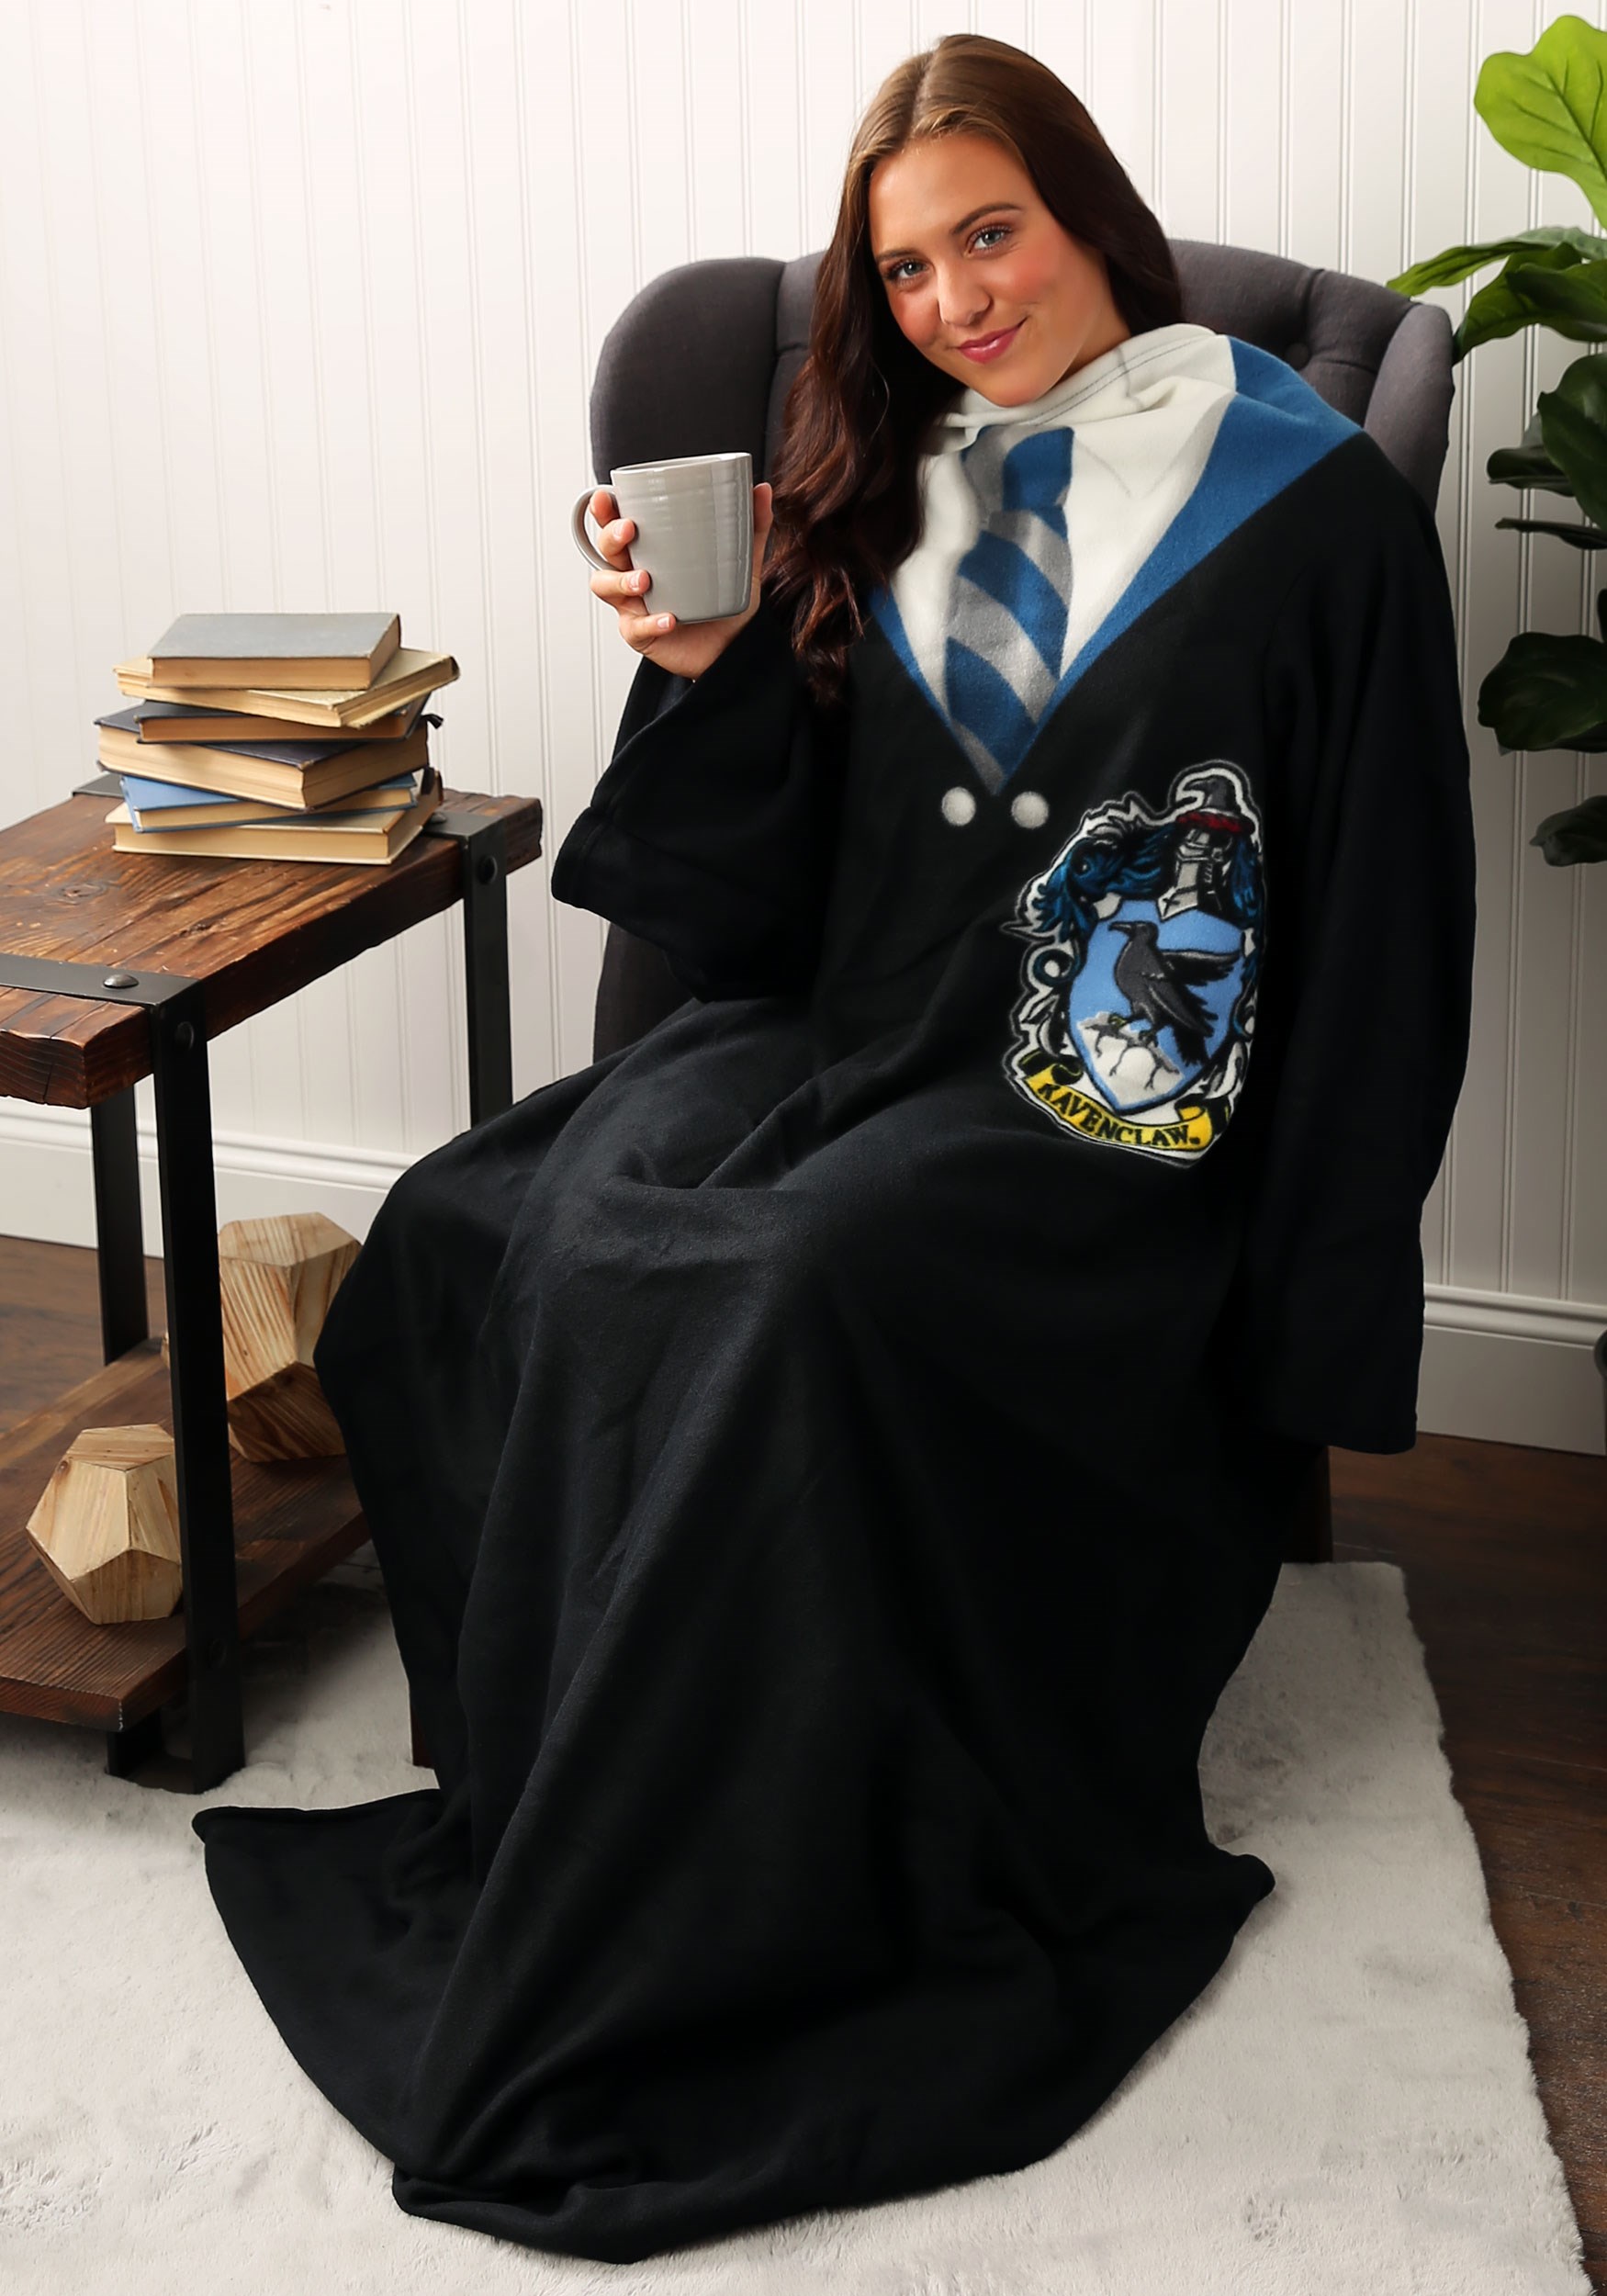 Harry Potter Collectibles  Harry potter collection, Woven blanket, Potter